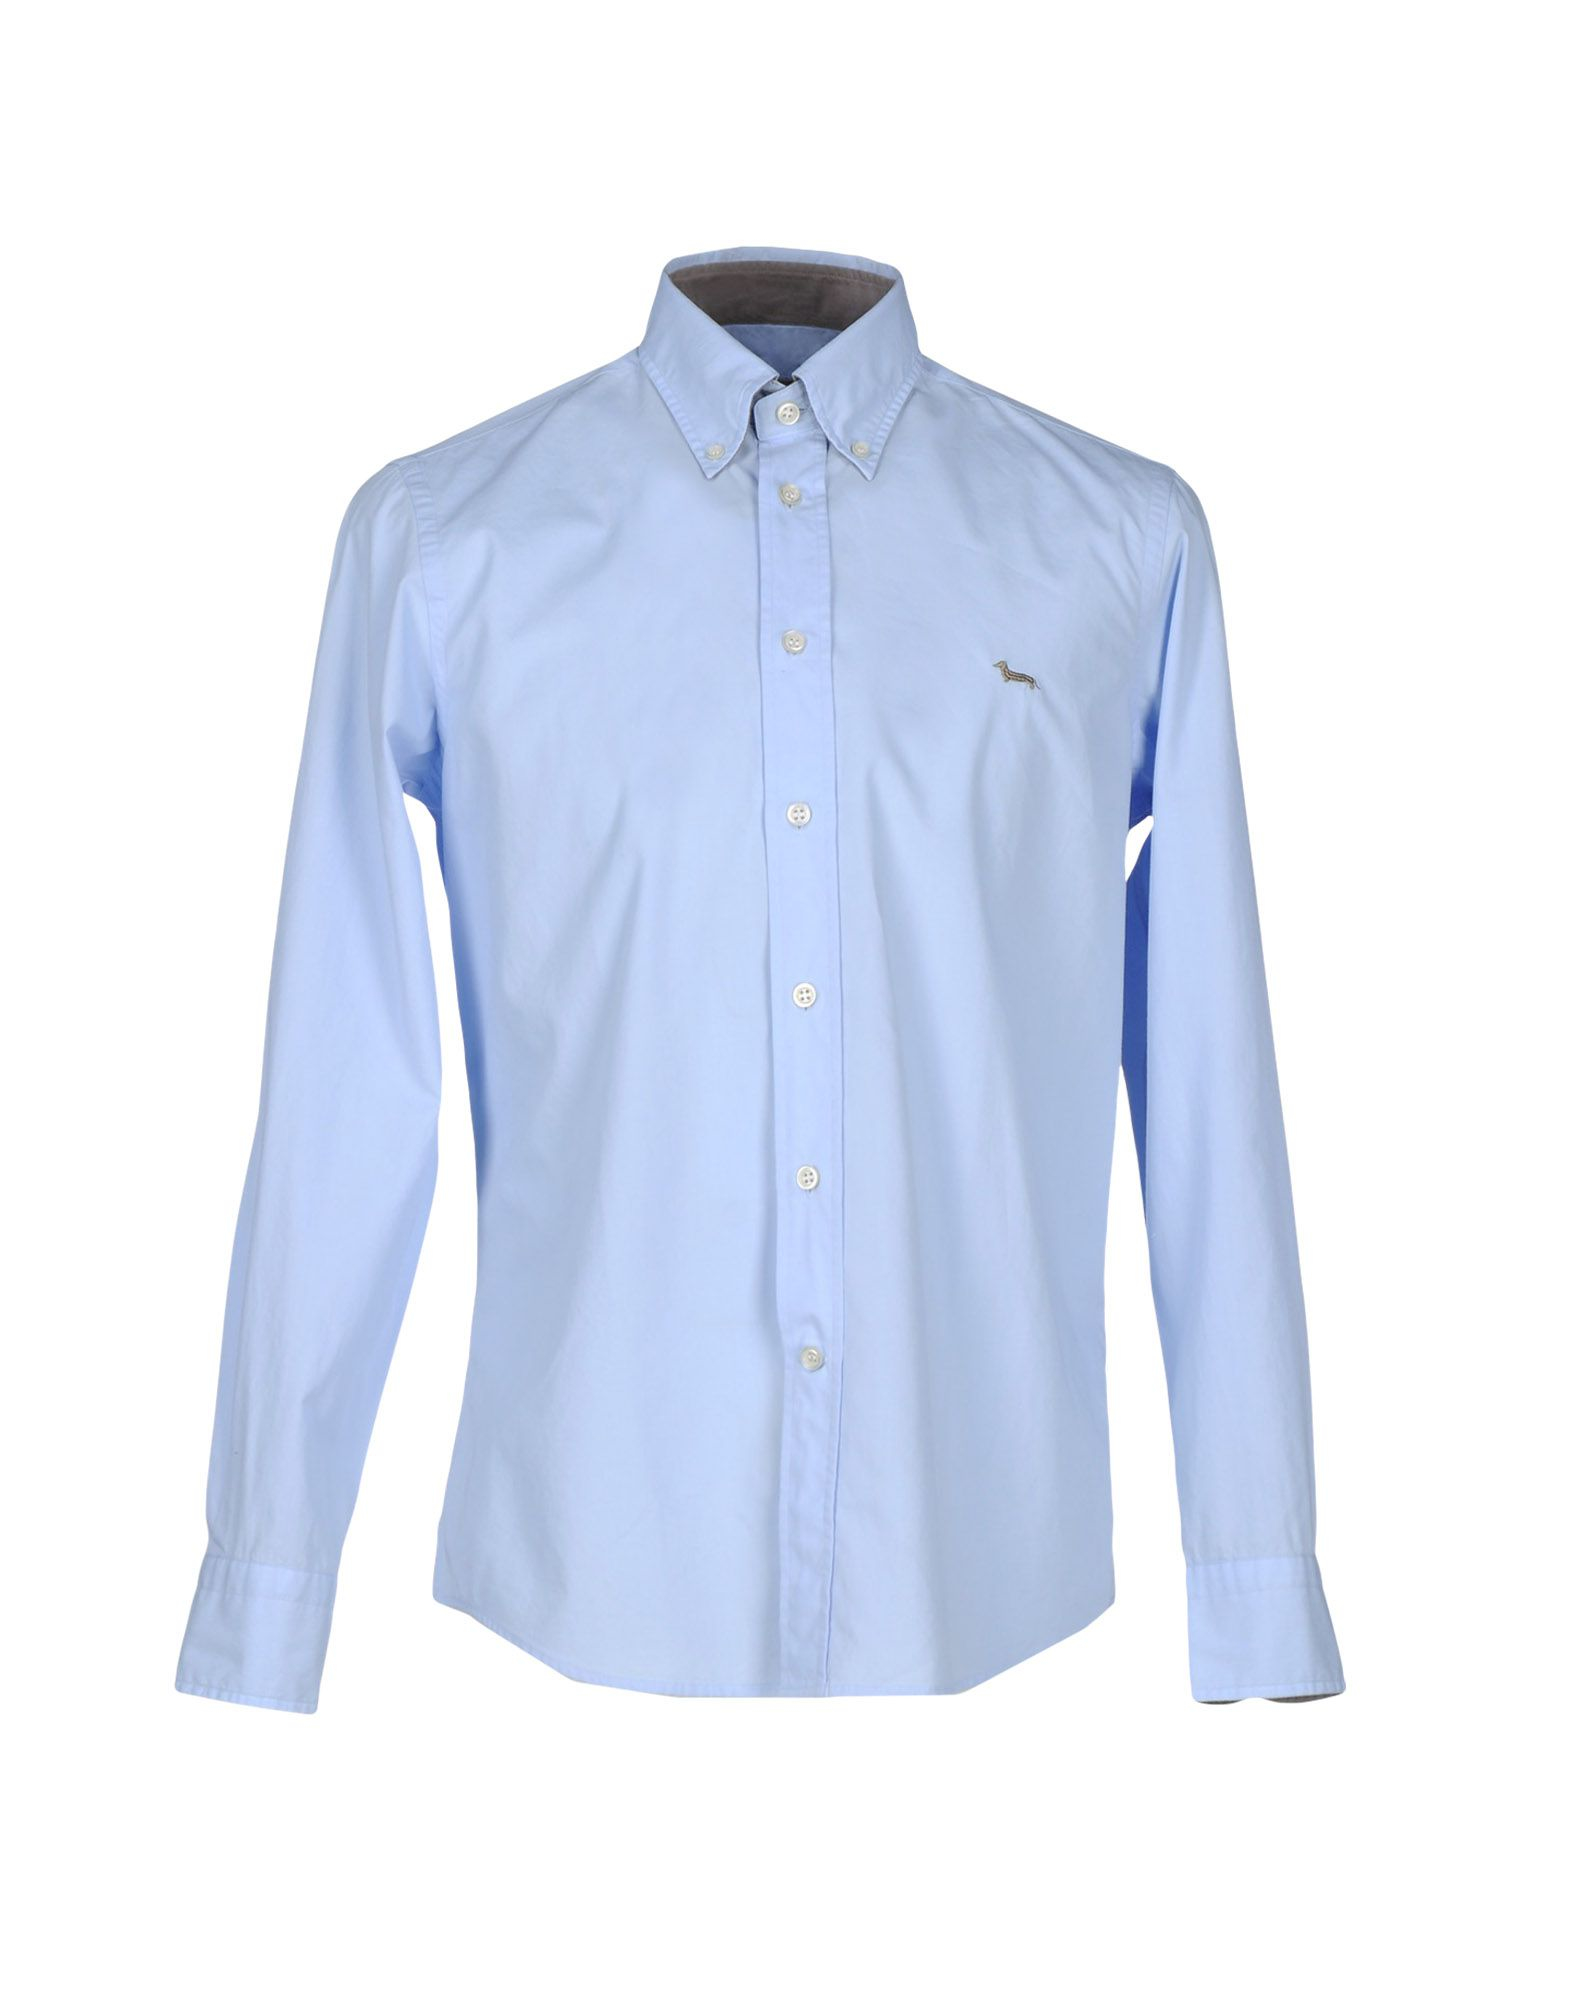 Lyst - Harmont & Blaine Shirt in Blue for Men